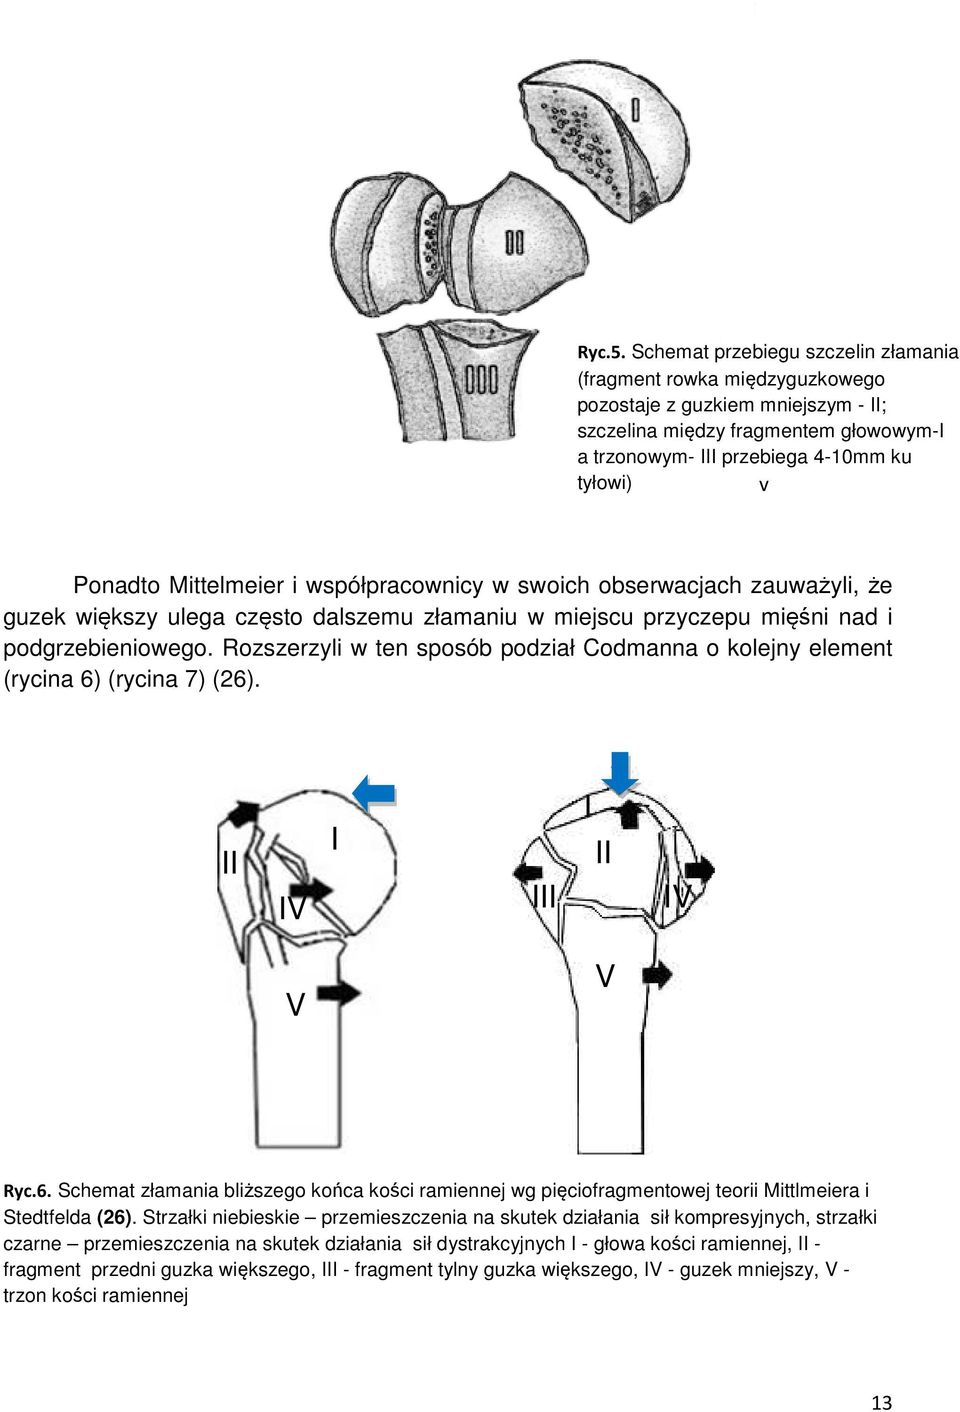 Mittelmeier i współpracownicy w swoich obserwacjach zauważyli, że guzek większy ulega często dalszemu złamaniu w miejscu przyczepu mięśni nad i podgrzebieniowego.